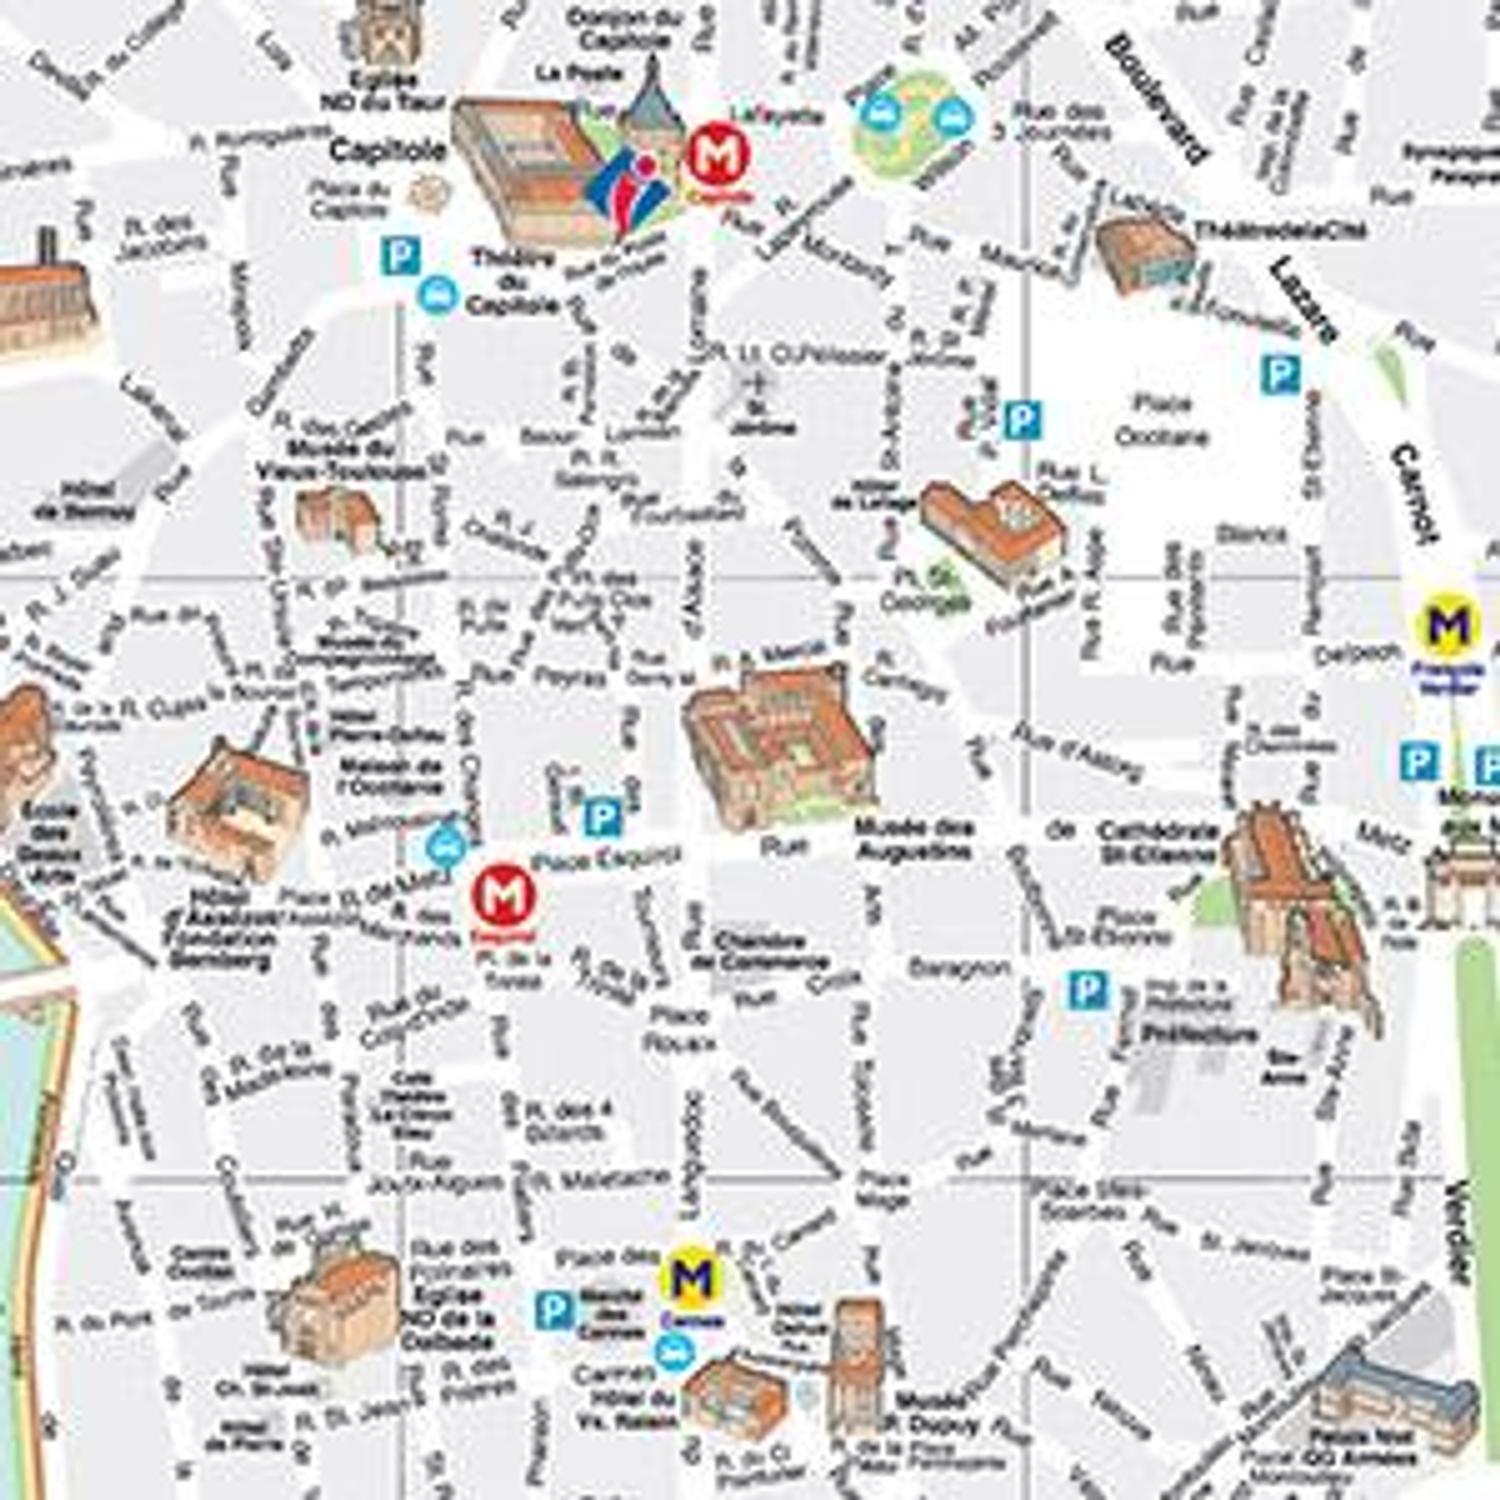 Plan du centre-ville de Toulouse